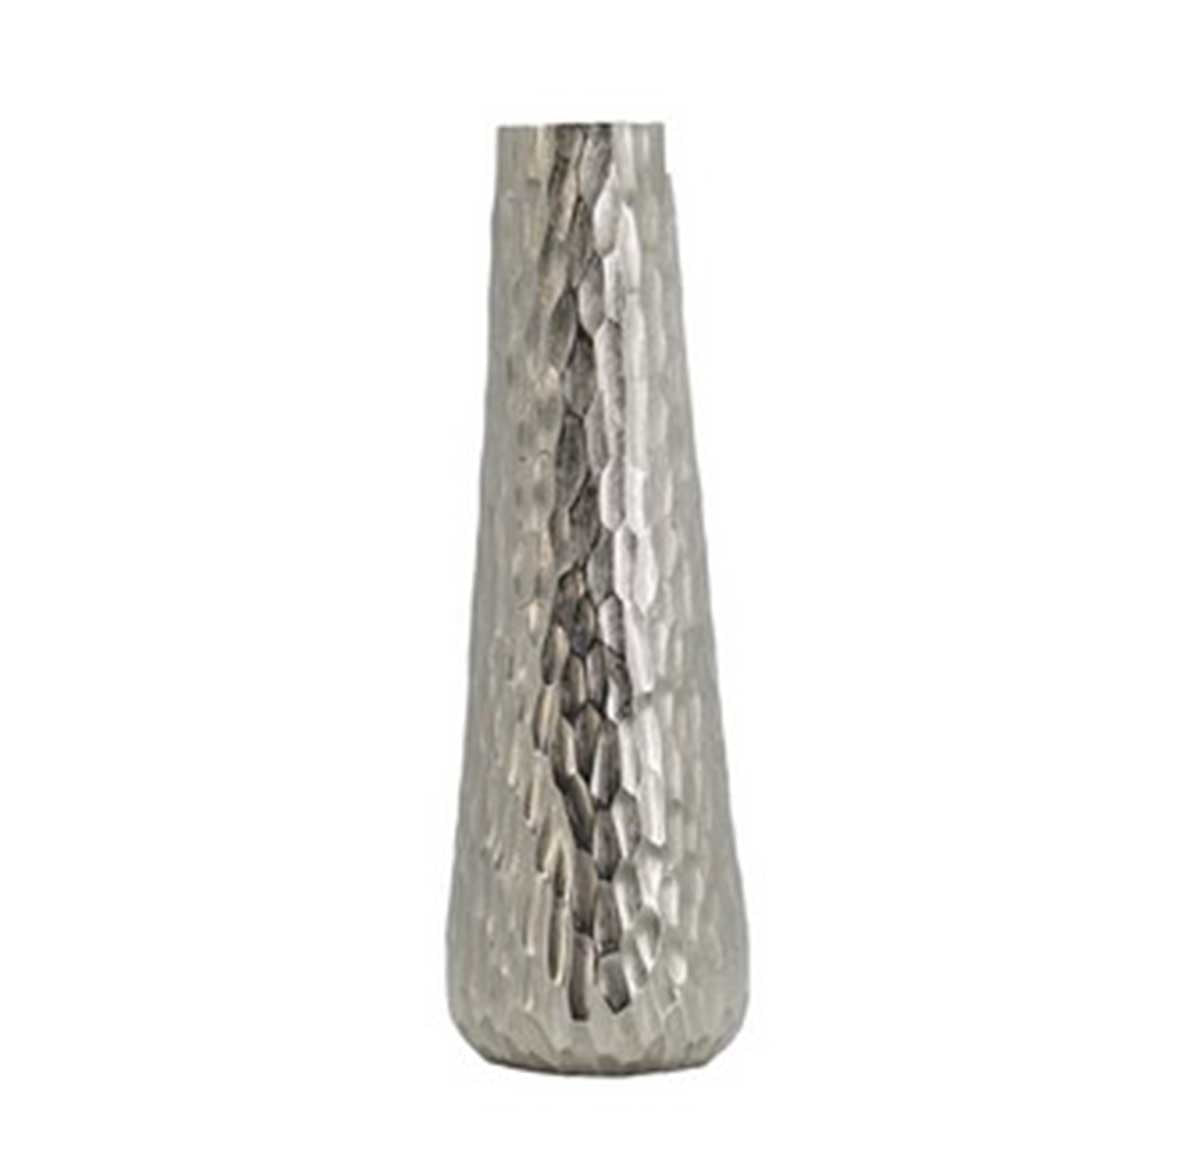 Diamond Textured Oblong Vase (49cm tall) | Vases & Urns | Home Decor